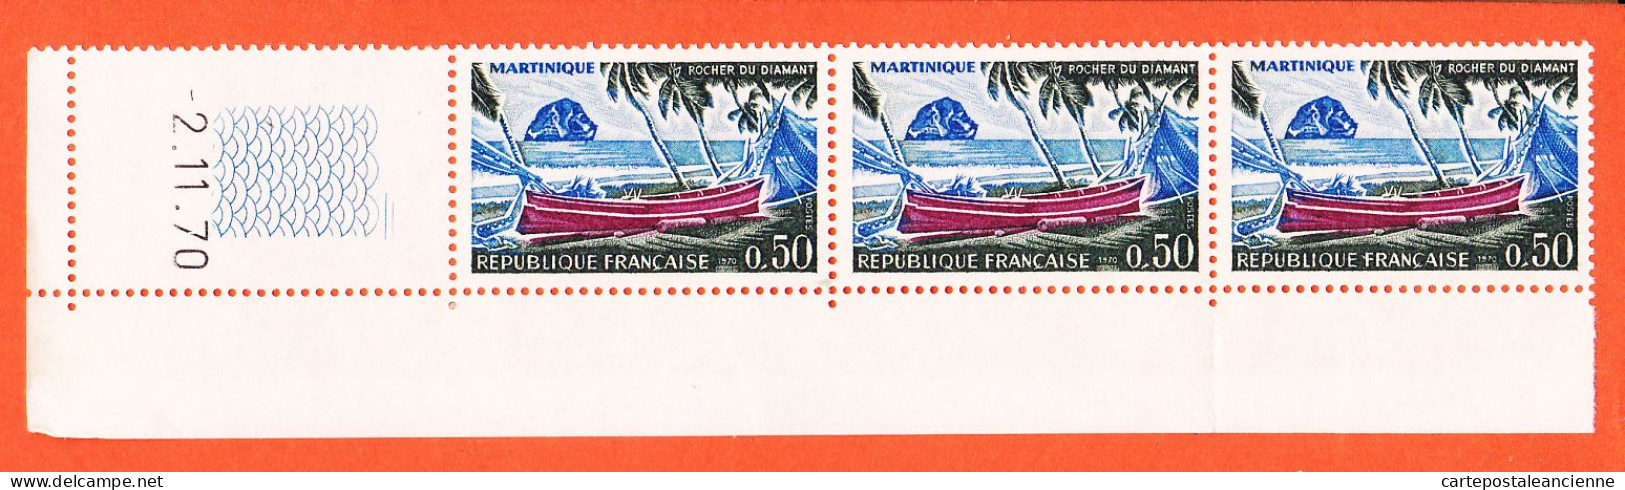 28581 / ⭐ Bloc Coin Daté France 1970 Y&T N°1644 Tirage  02-11-70 MARTINIQUE 3x 0.50 Fr Neuf Sans Charnière Y & T - 1970-1979